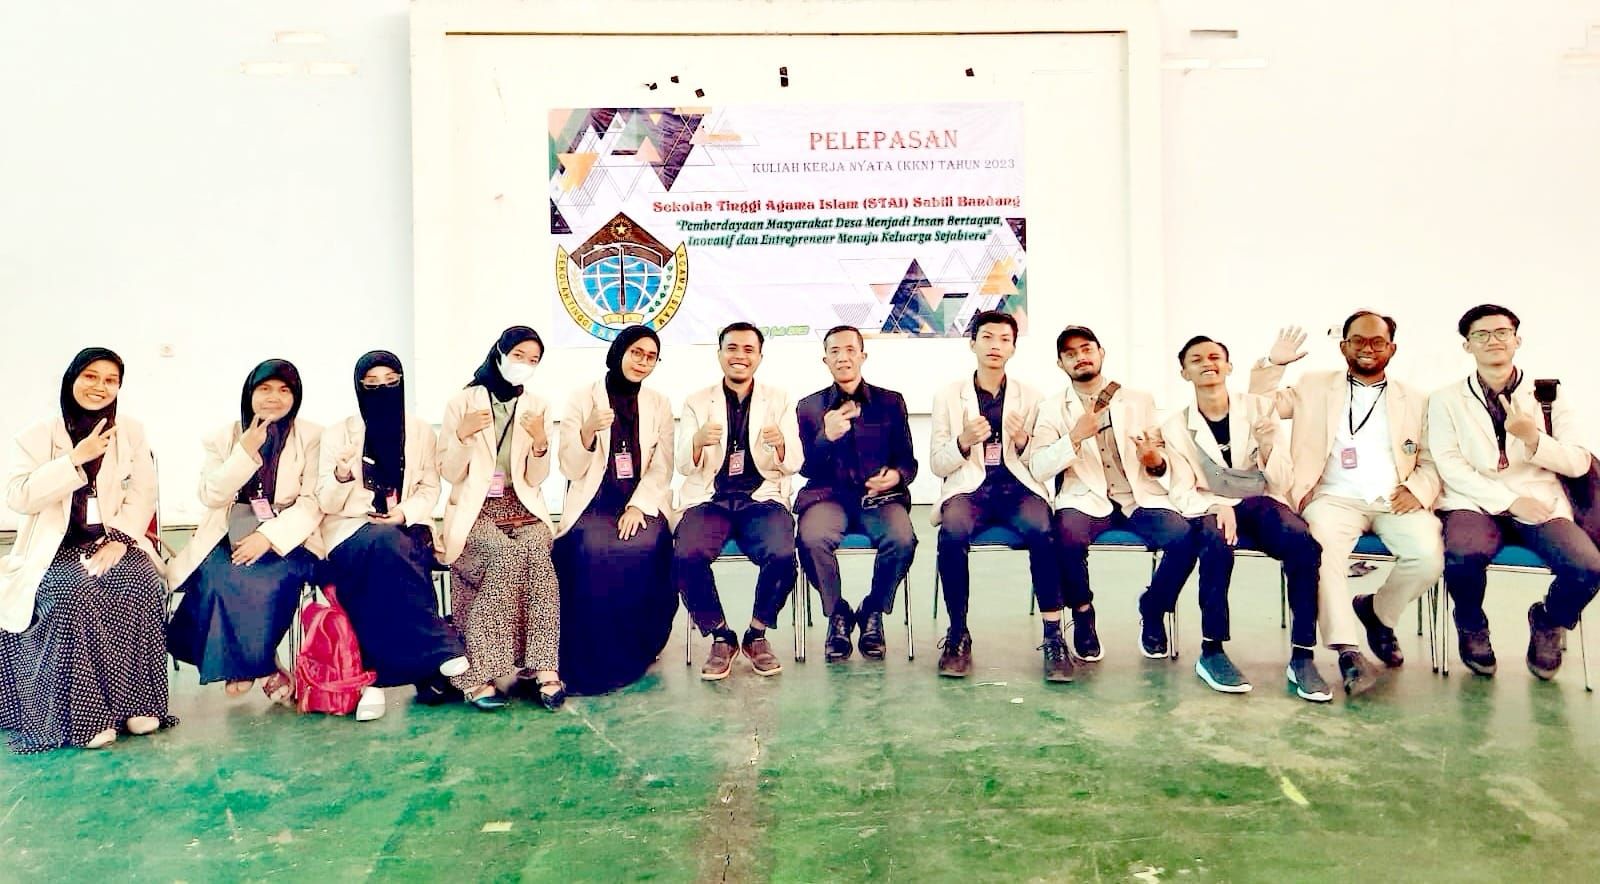 Foto bersama mahasiswa STAI saat menggelar KKN di desa Lengkong, Kecamatan Bojongsoang, Kabupaten Bandung.